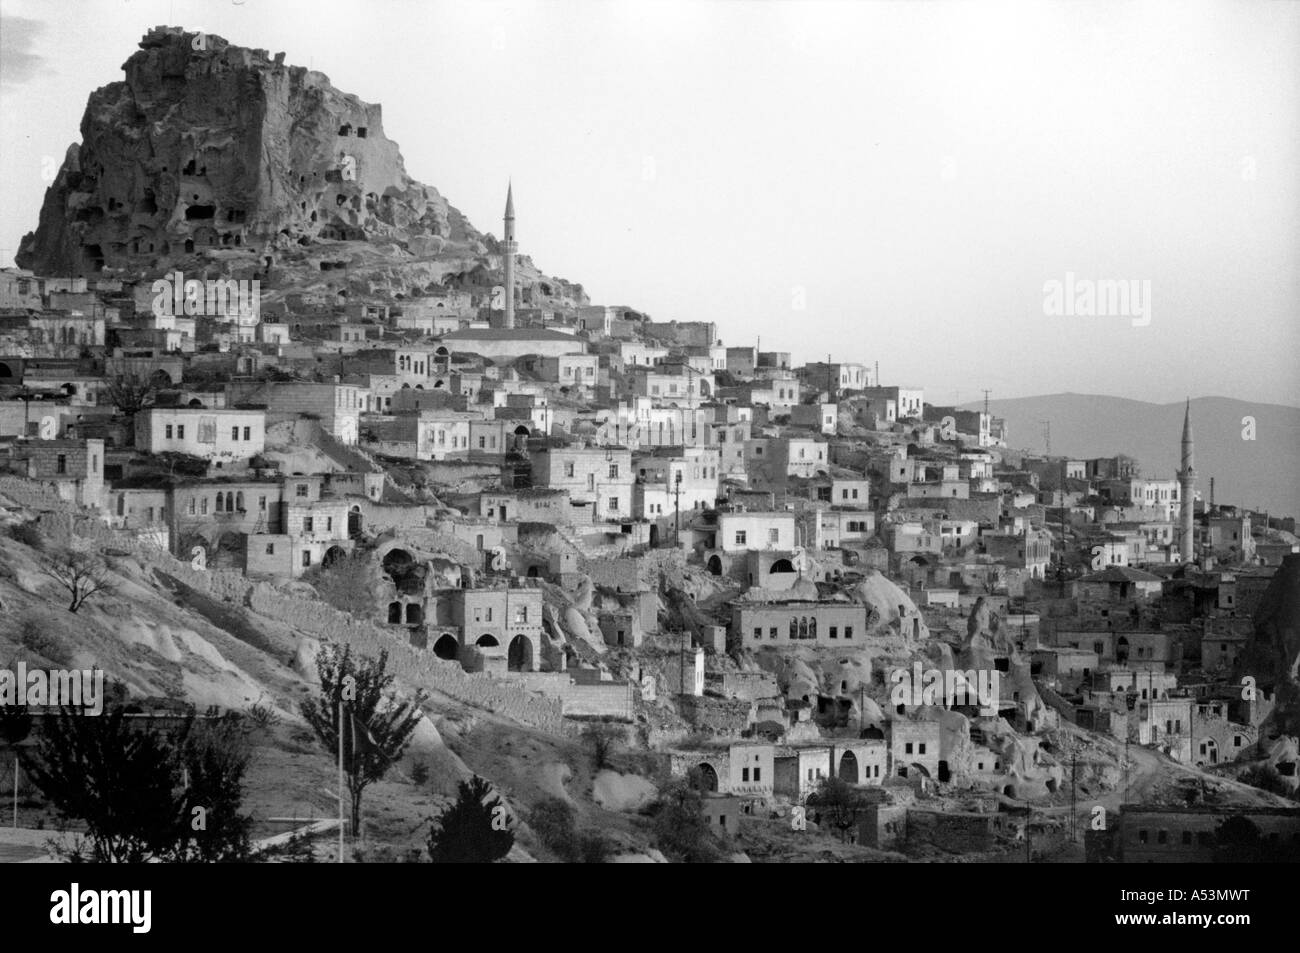 Painet ja1468 299 blanco y negro paisaje nevsehir Cappadocia Turquía país menos desarrollado económicamente nación en desarrollo Foto de stock